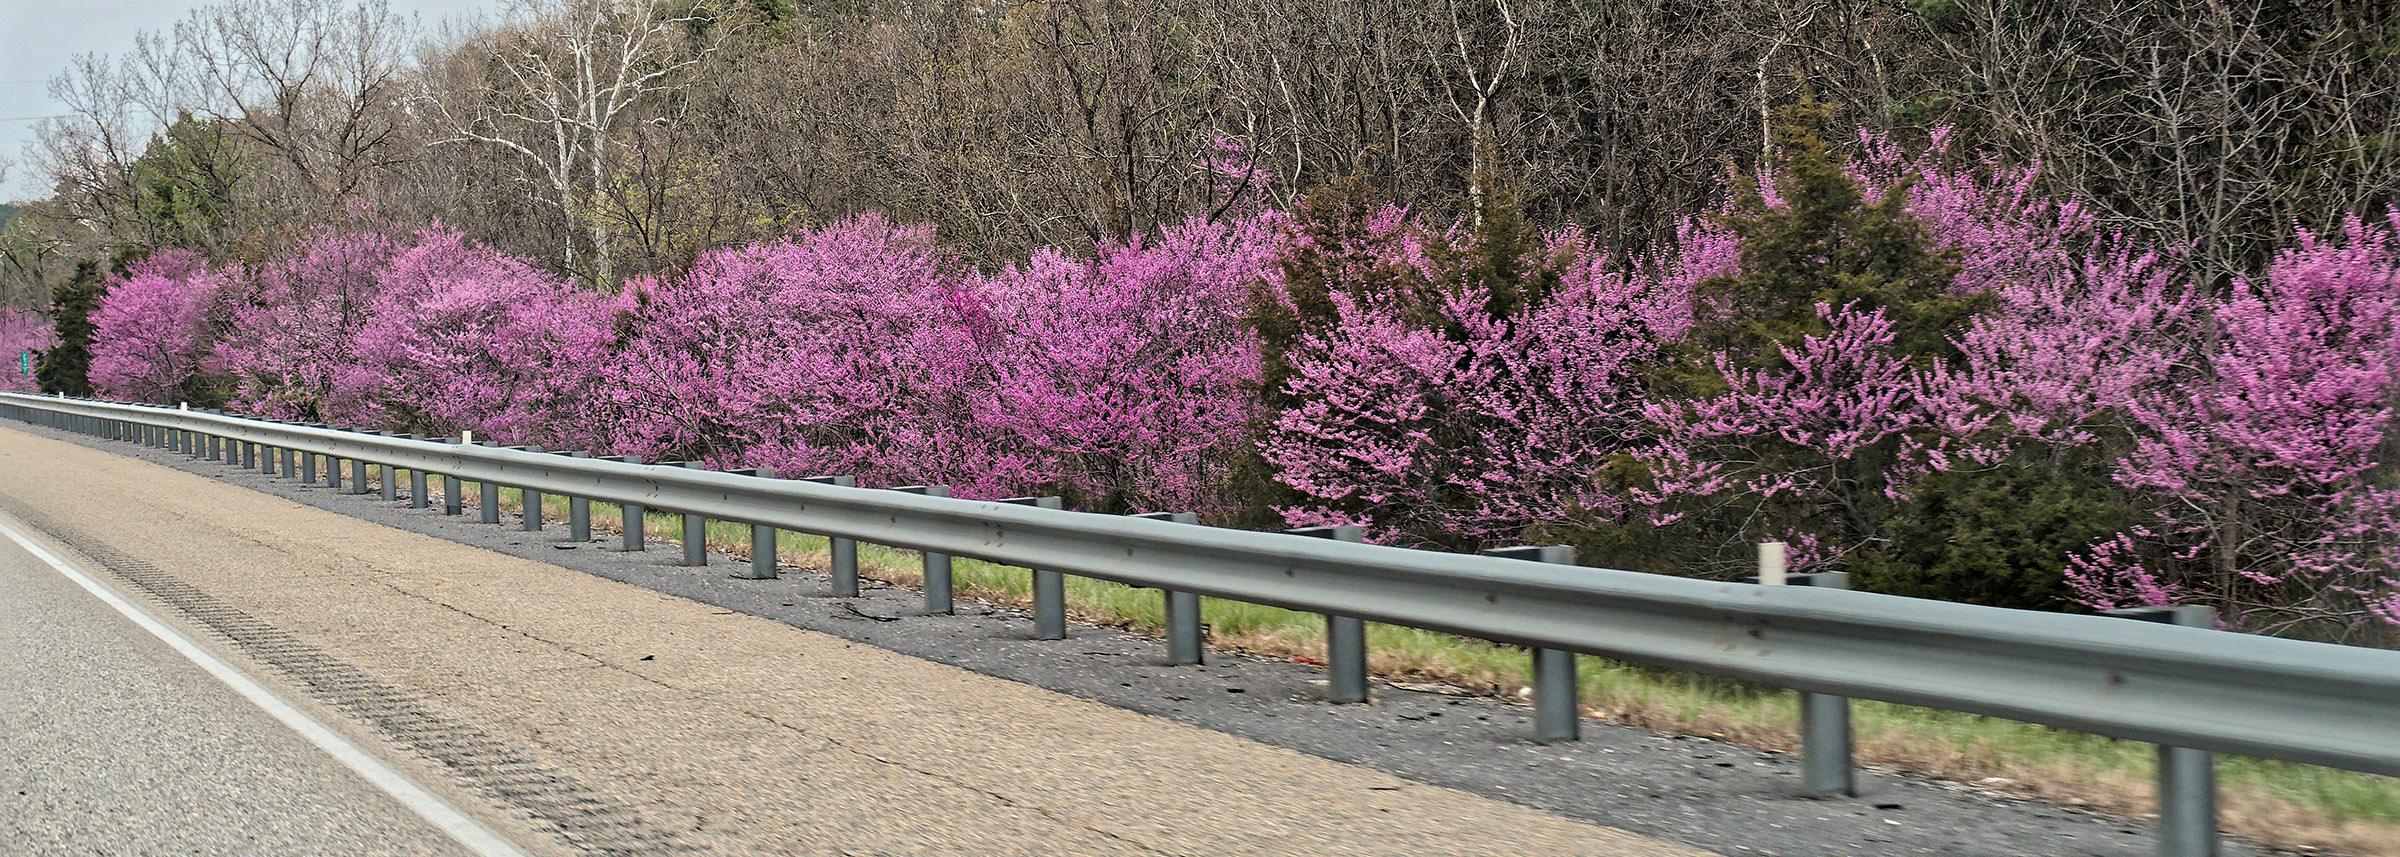 Eastern Redbud trees in bloom along Interstate 81 headed North towards Harrisonburg.